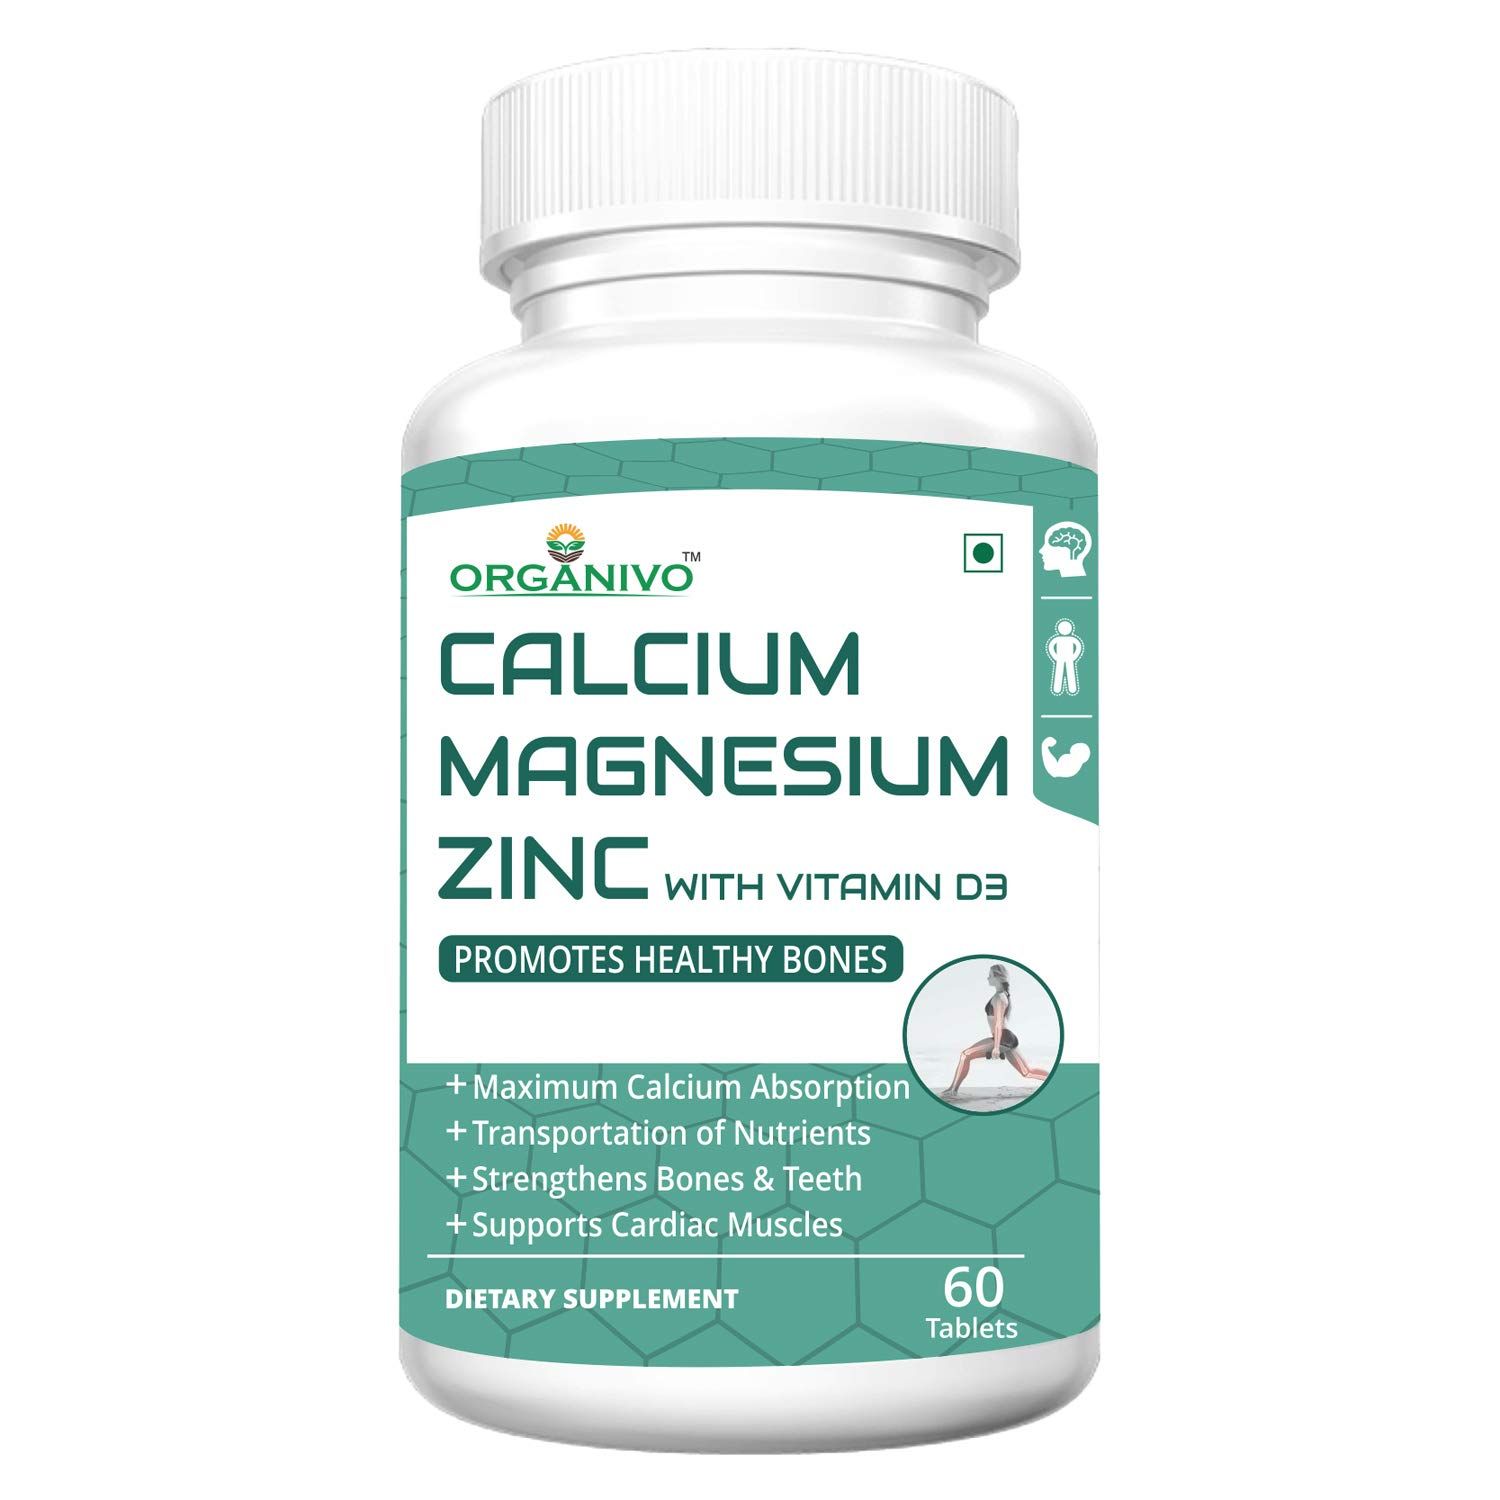 Organivo Calcium, Magnesium, Zinc & Vitamin D3 Supplement Tablets Image